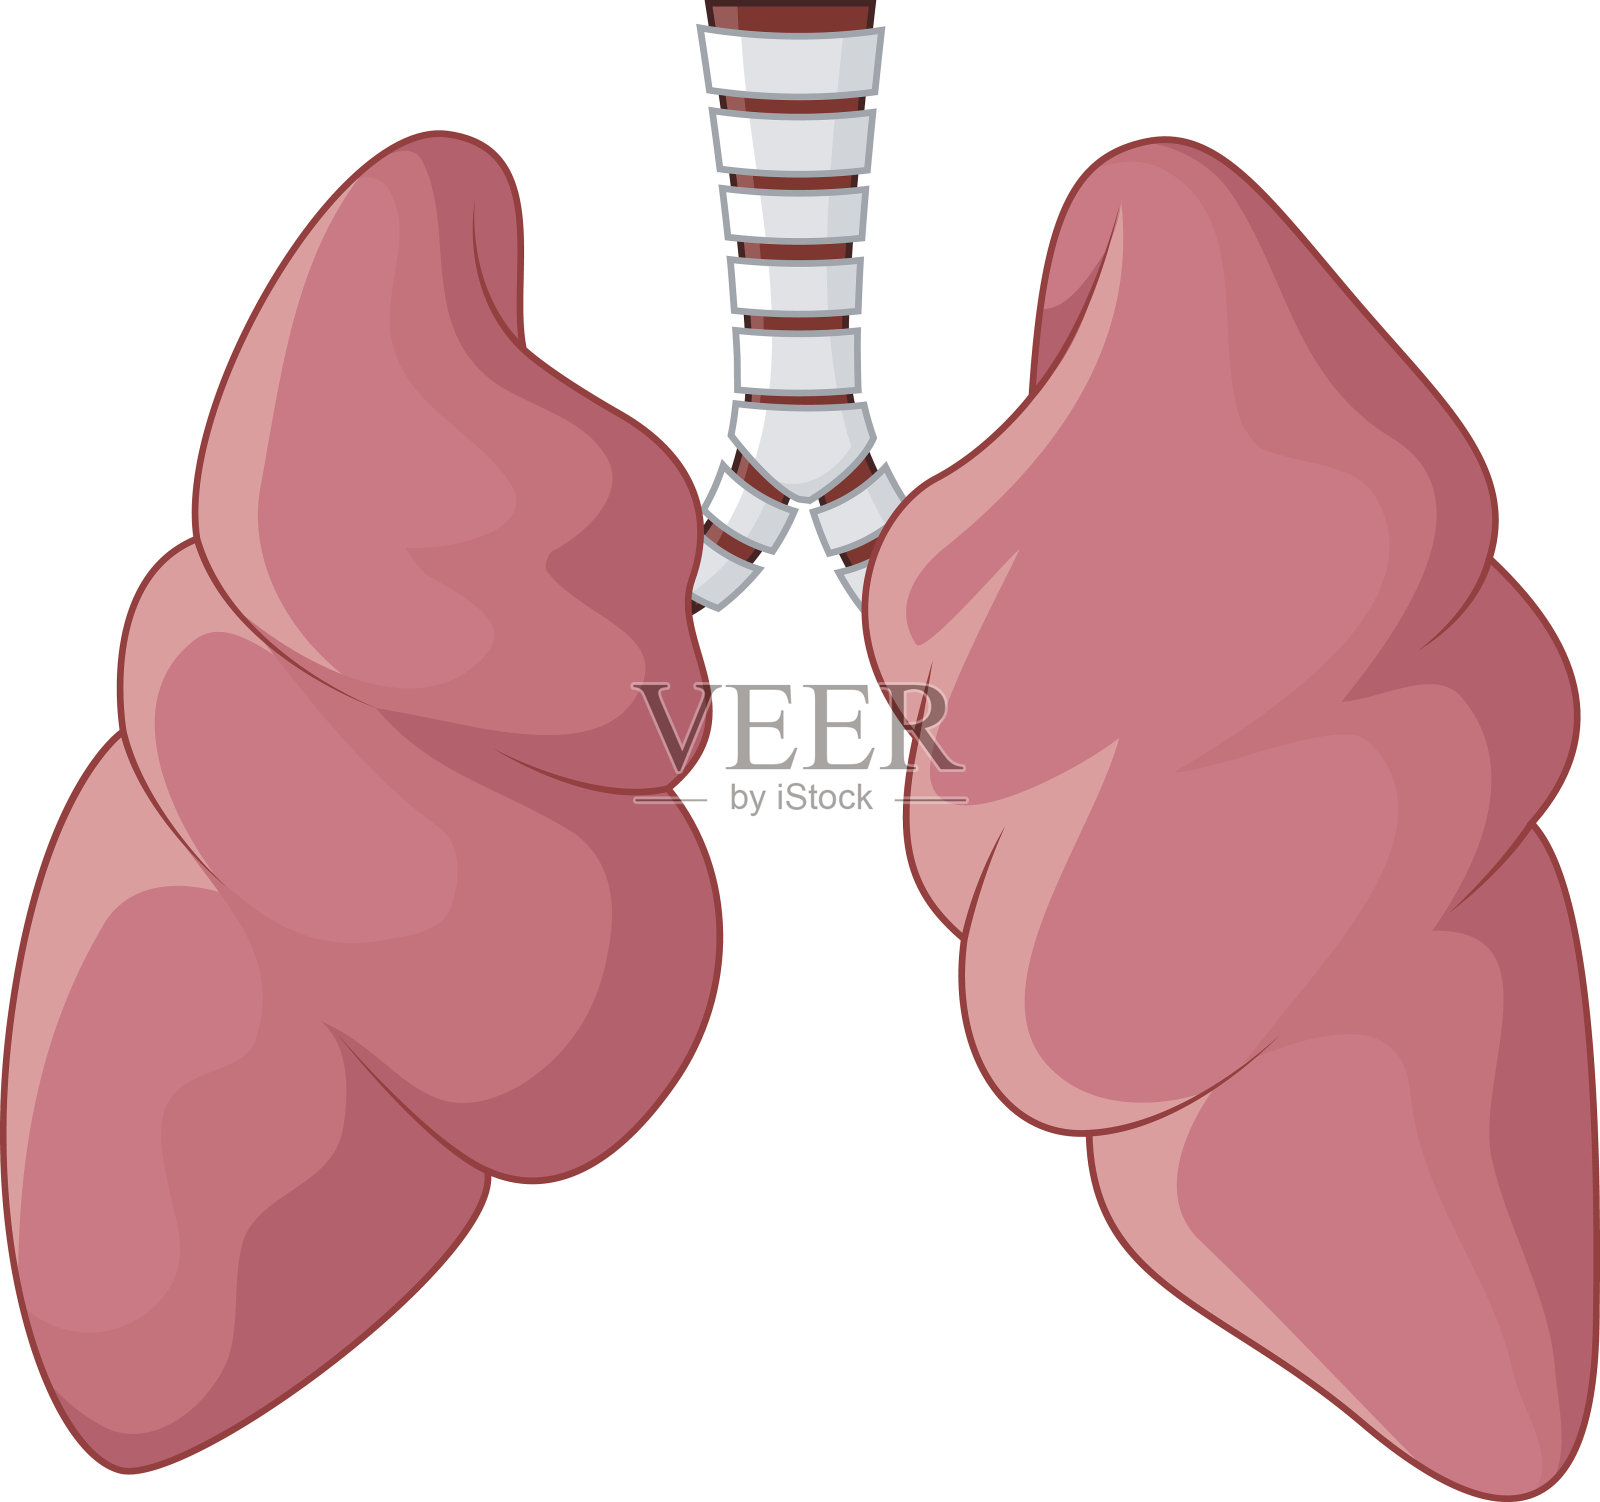 人肺呼吸卡通插画图片素材